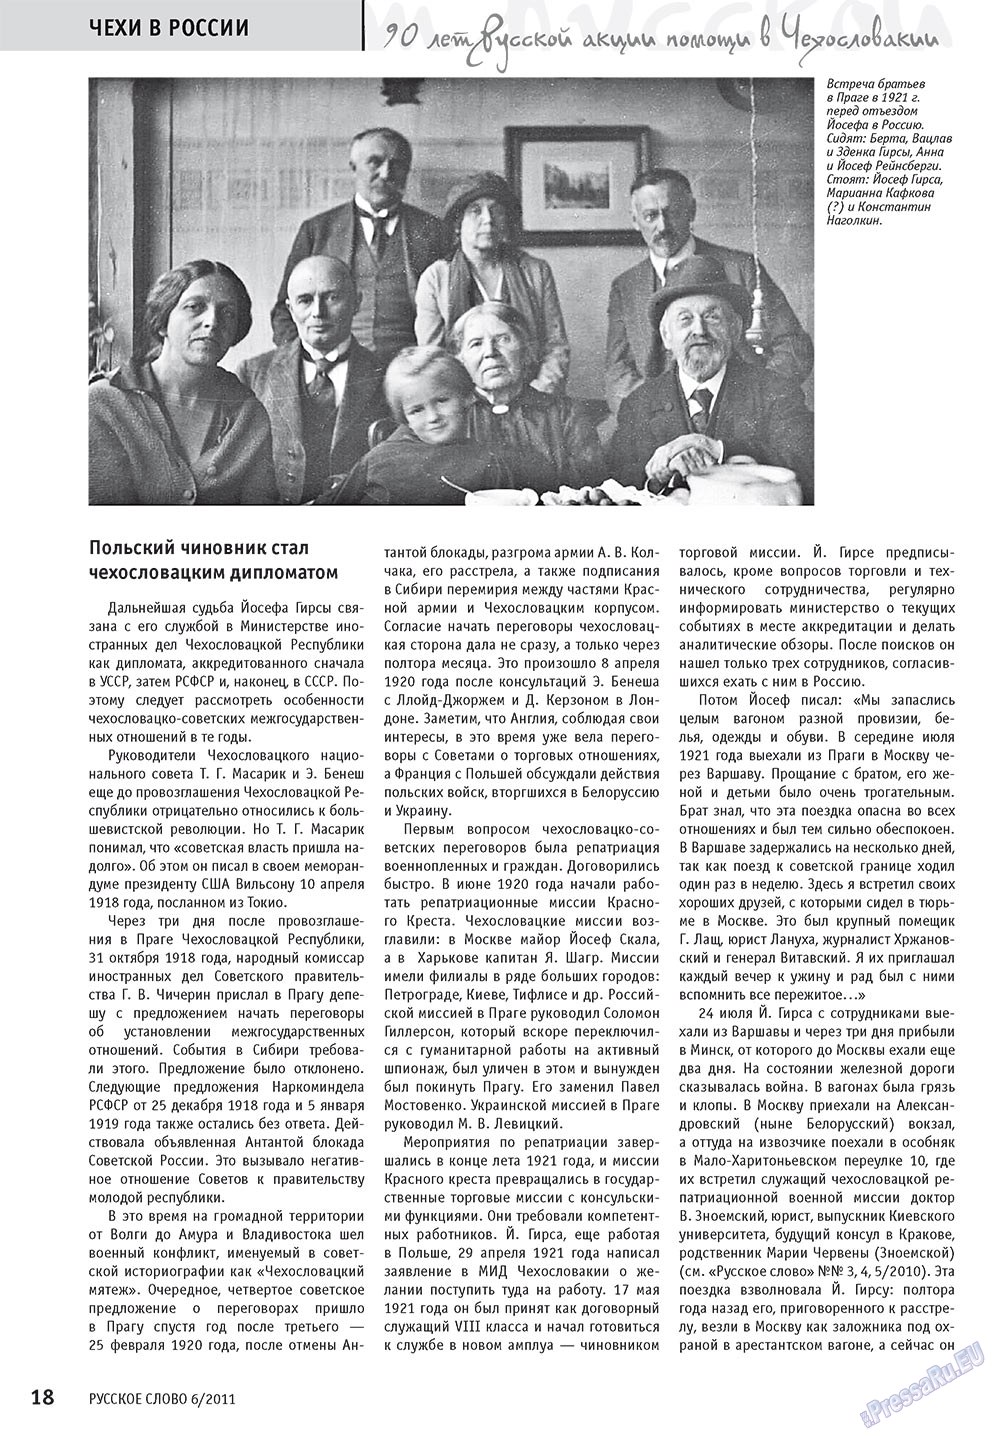 Русское слово, журнал. 2011 №6 стр.20